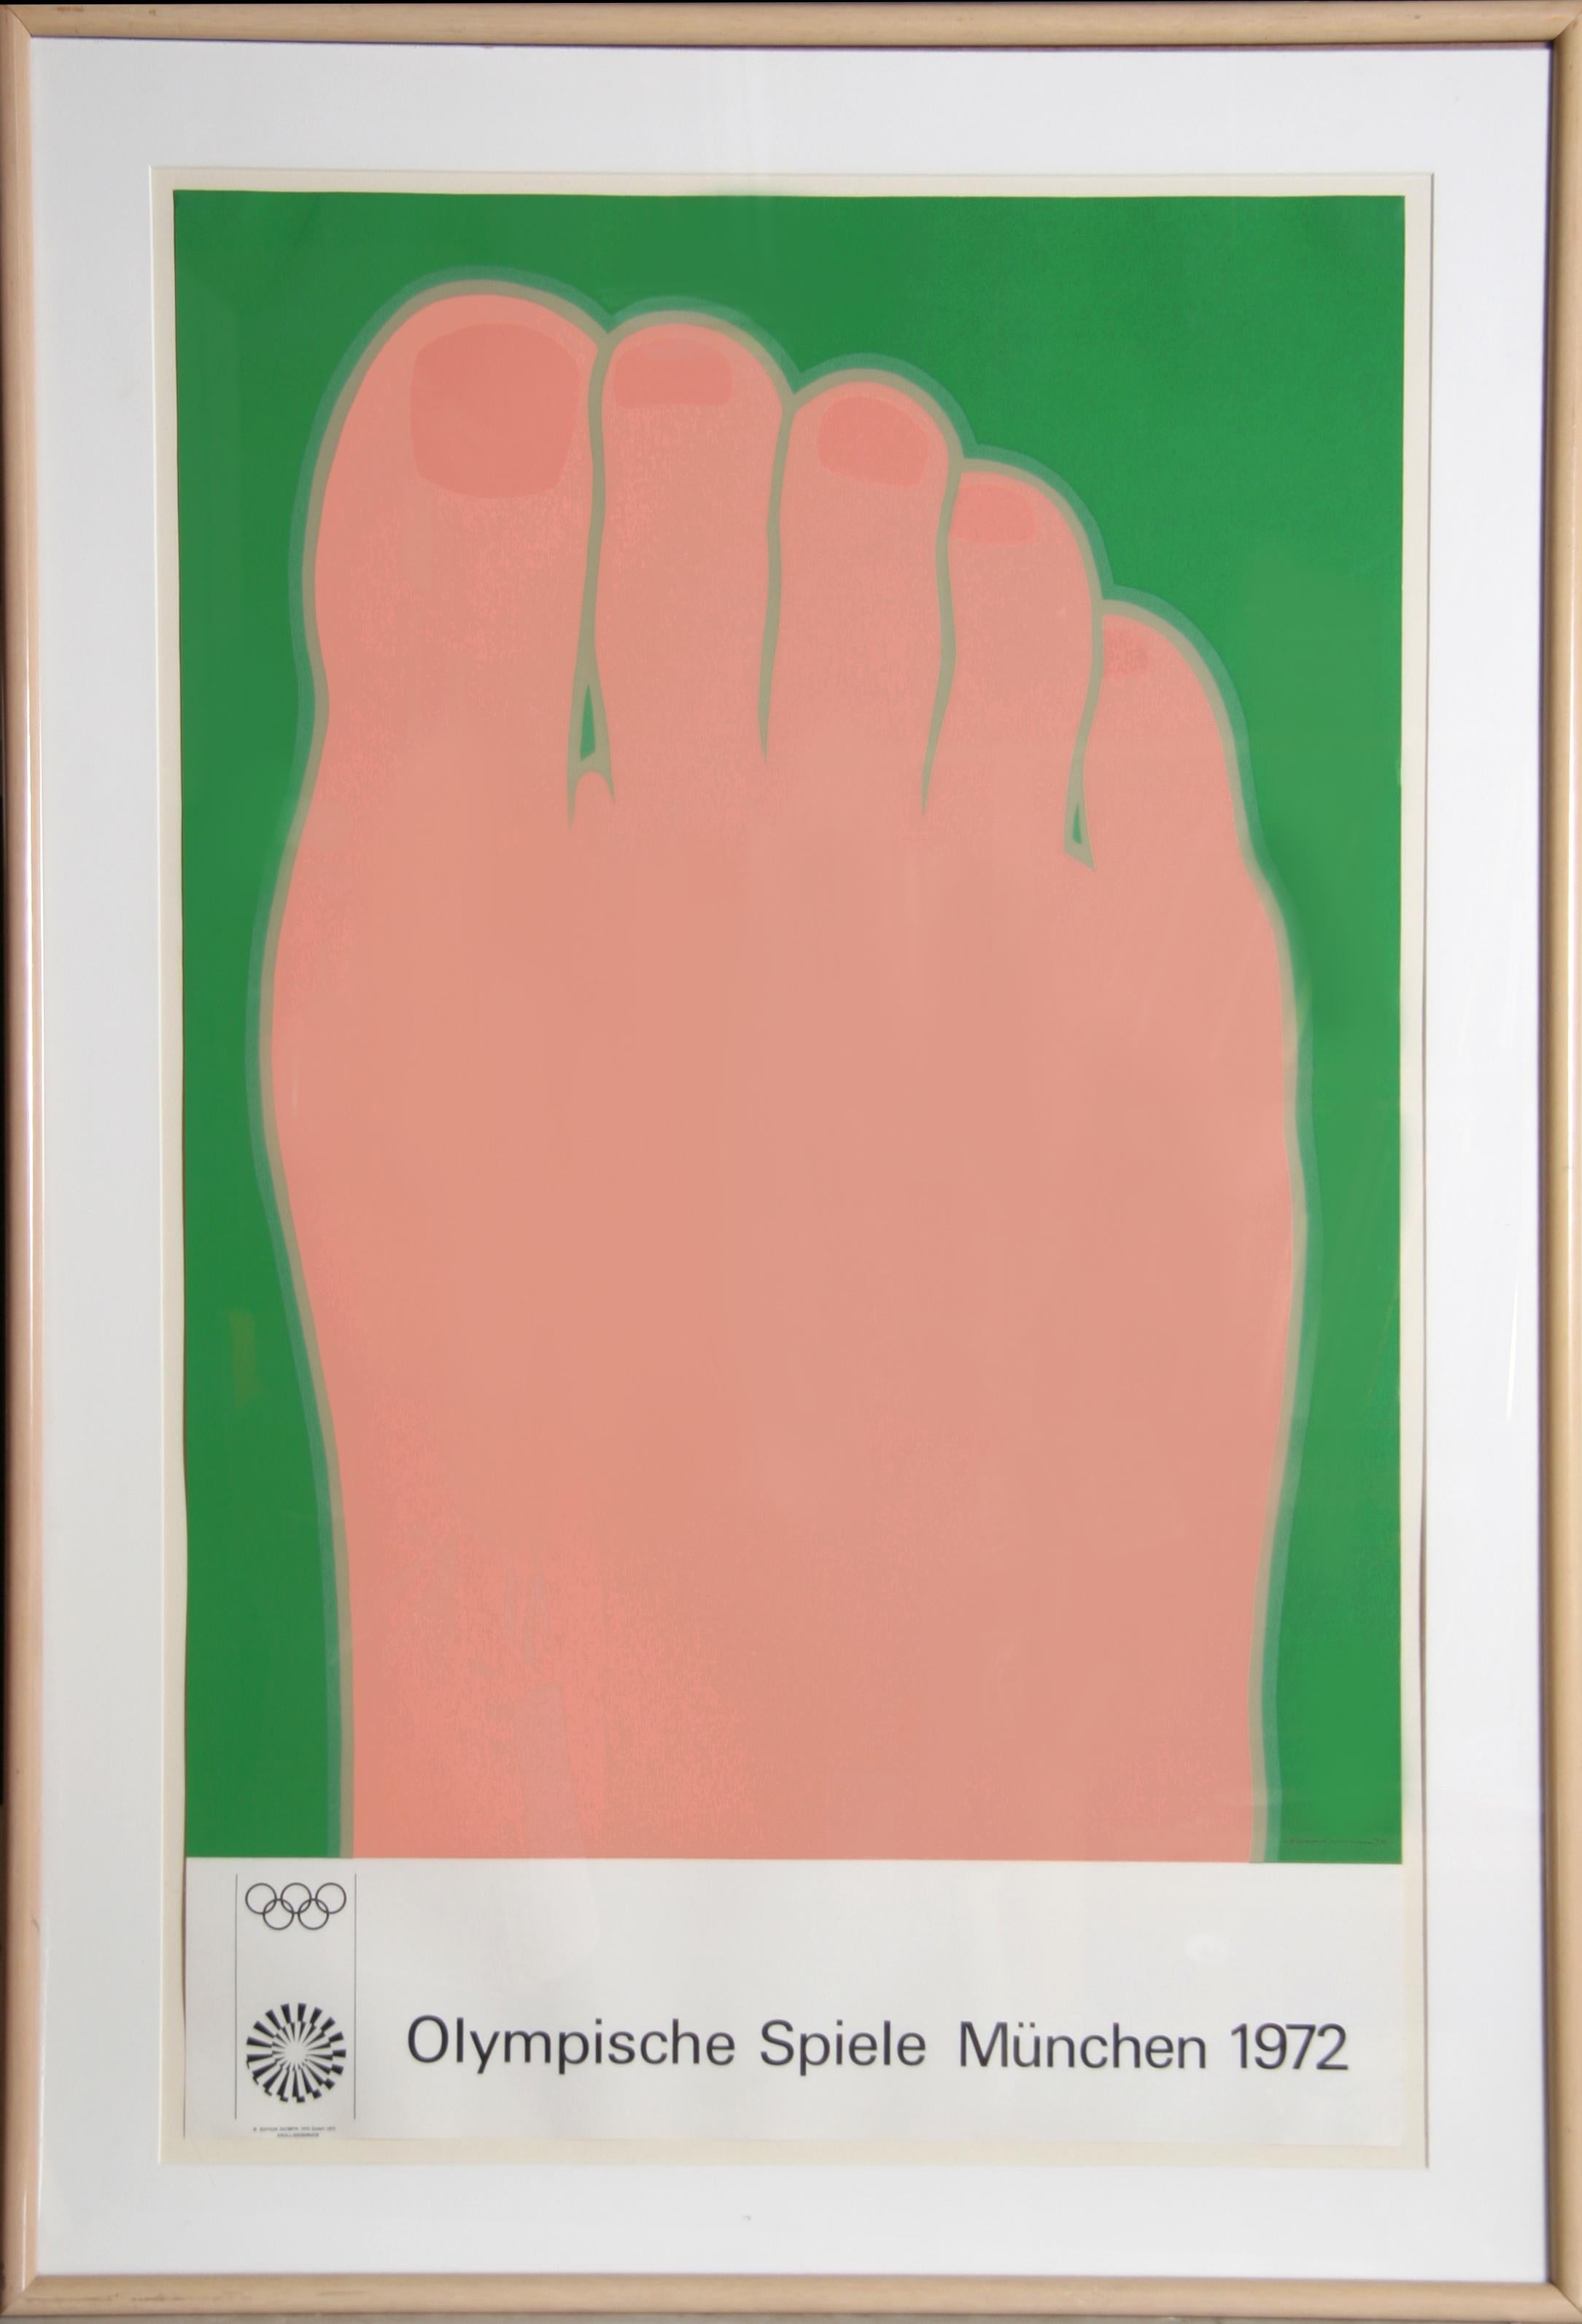 Artistics : Tom Wesselmann (1931 - 2004)
Titre : Olympische Spiele Muenchen (Foot)
Année : 1972
Support : Affiche lithographique montée sur lin
Edition : 3000
Dimensions : 101,6 cm x 63,5 cm (40 in. x 25 in.)
Taille du cadre : 45 x 30 pouces